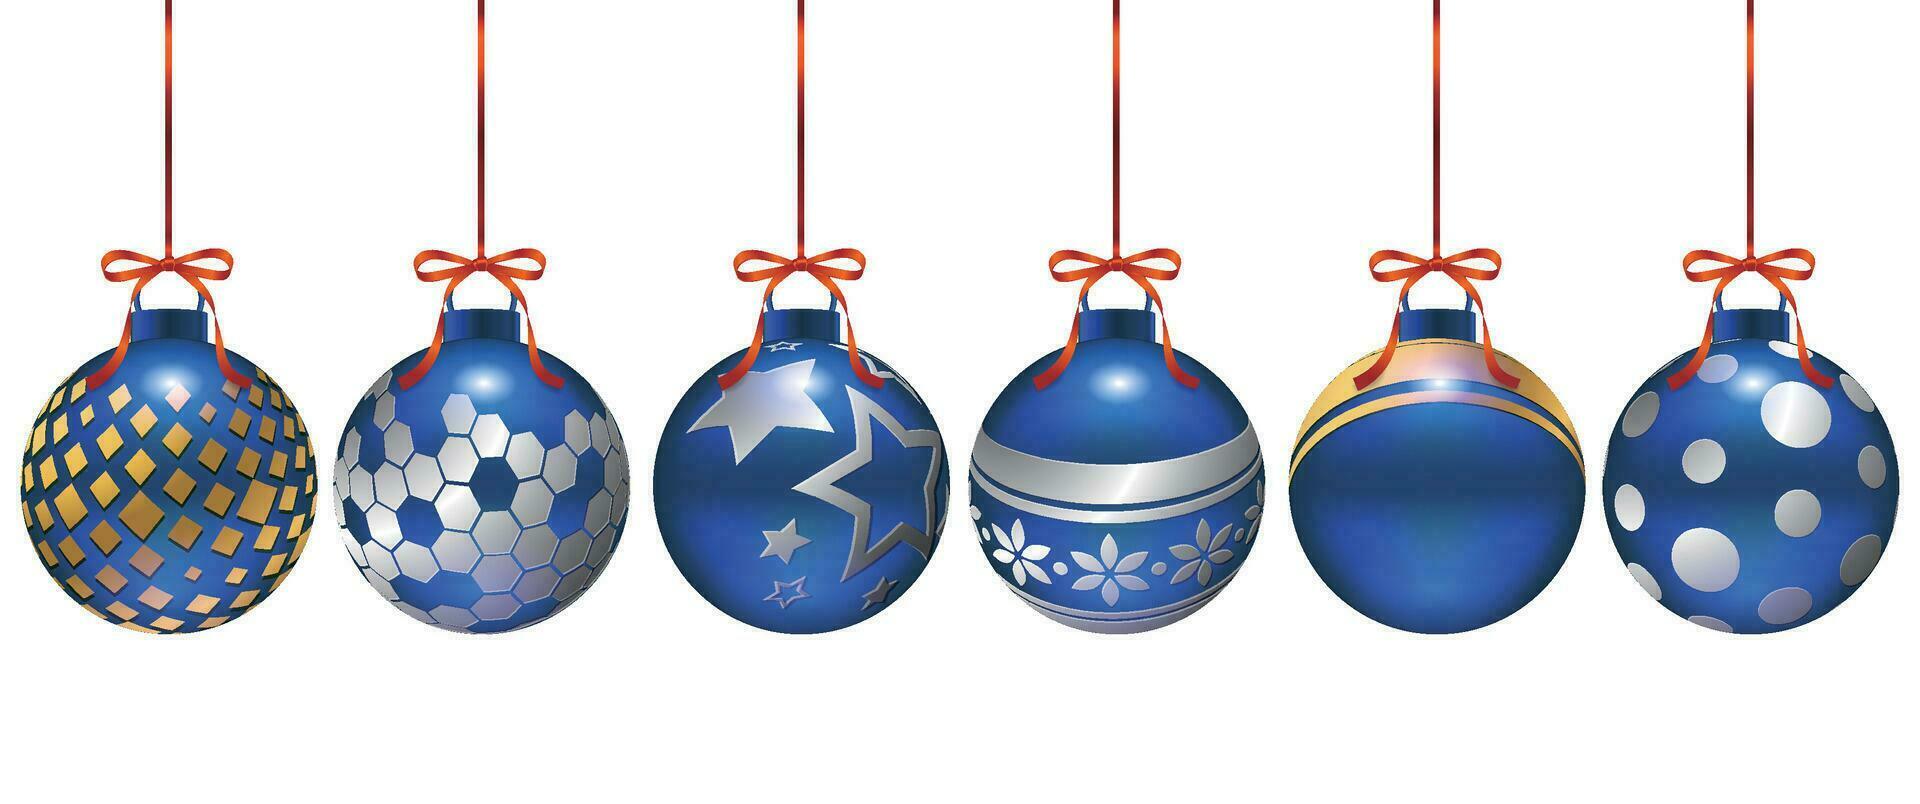 uppsättning av jul dekorationer i annorlunda mönster med metallisk glans, lämplig för affischer, kort, försäljning dekorationer vektor